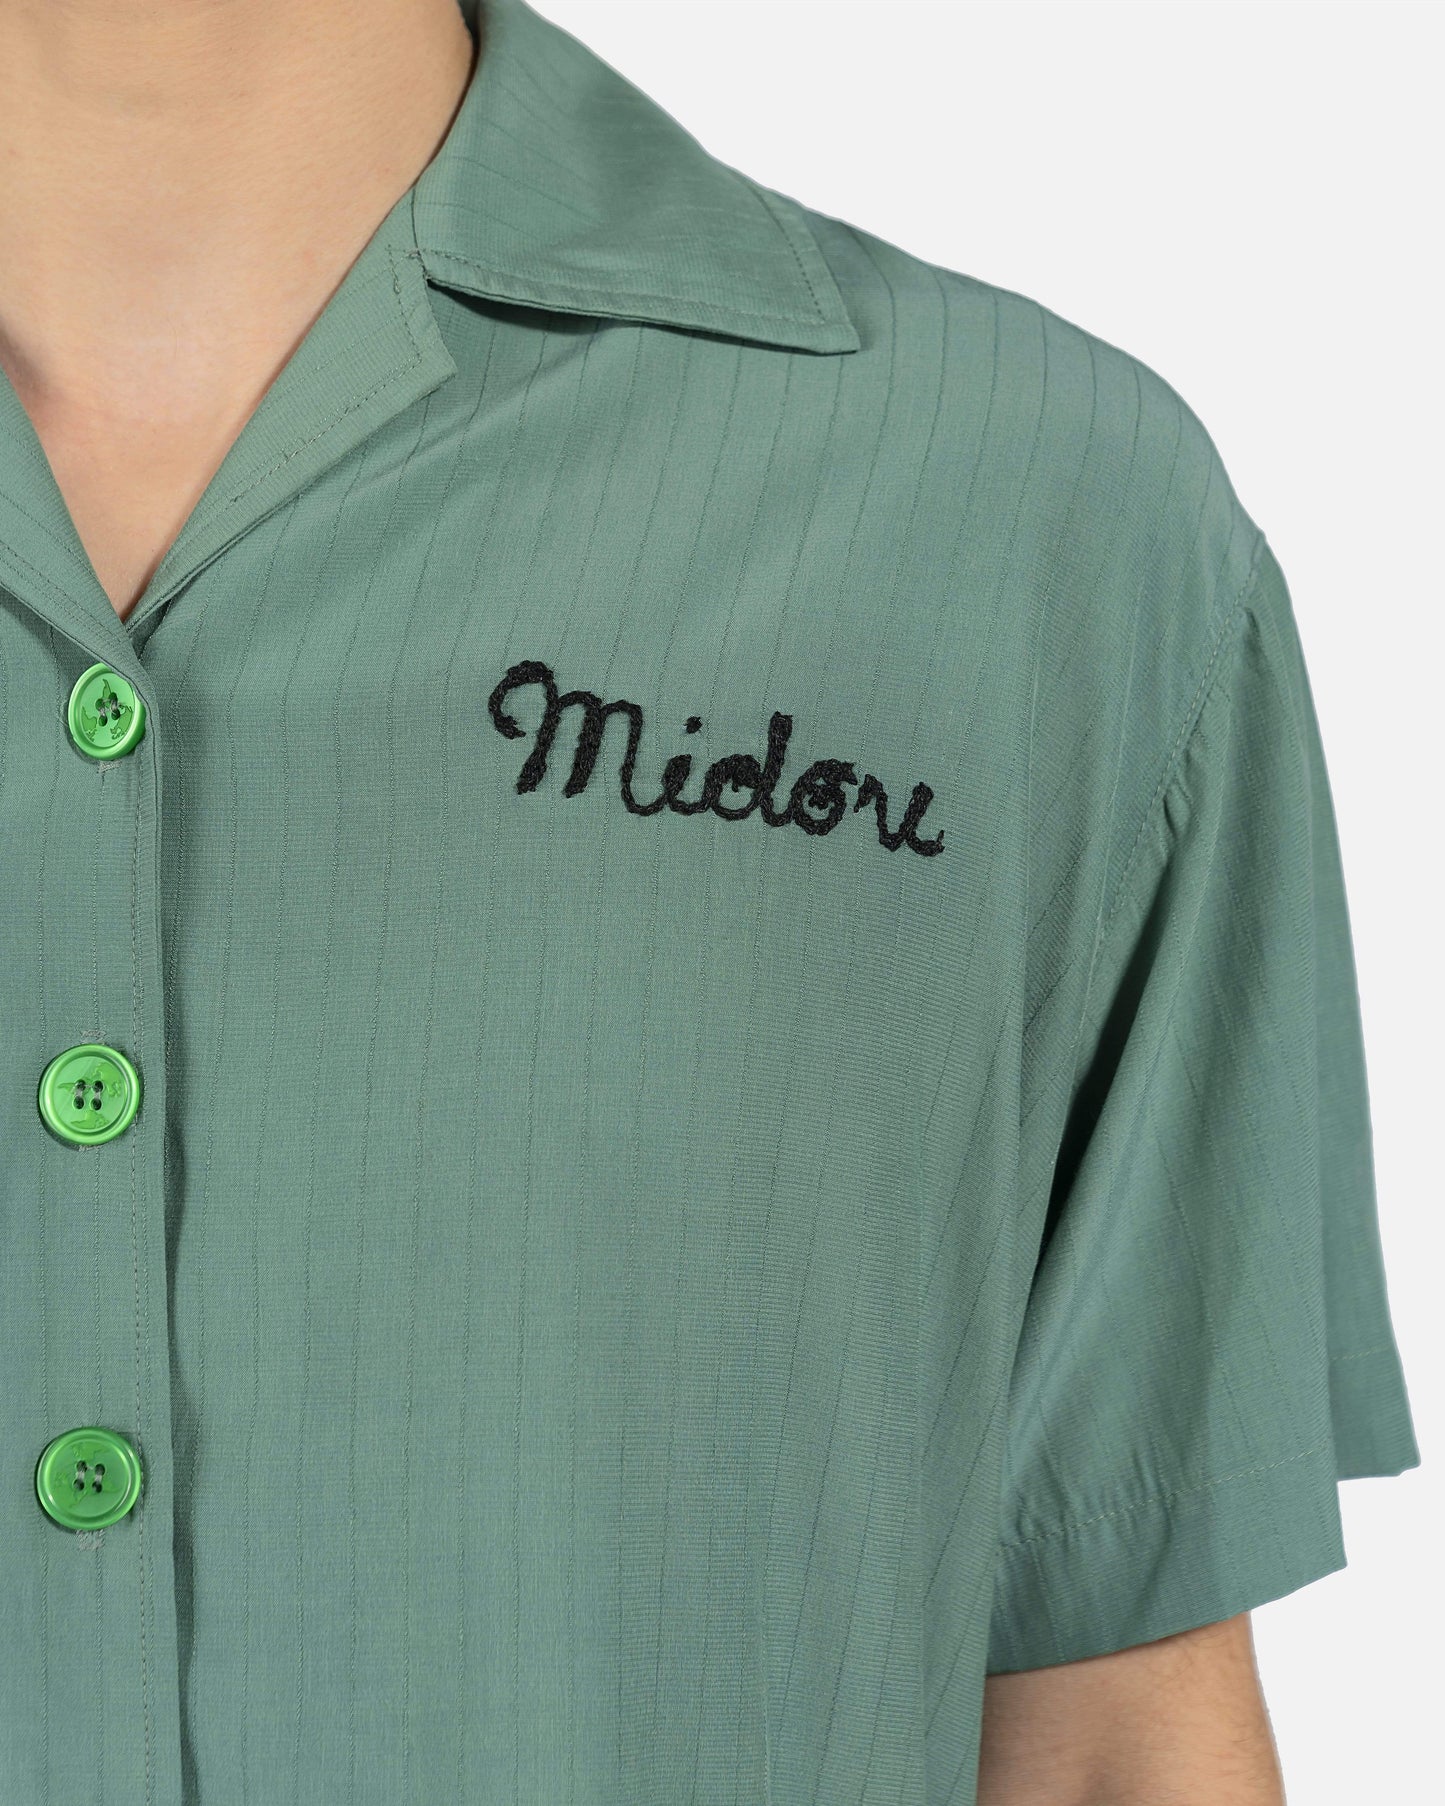 Midori Men's Shirts Gulag Bowling Shirt in Green